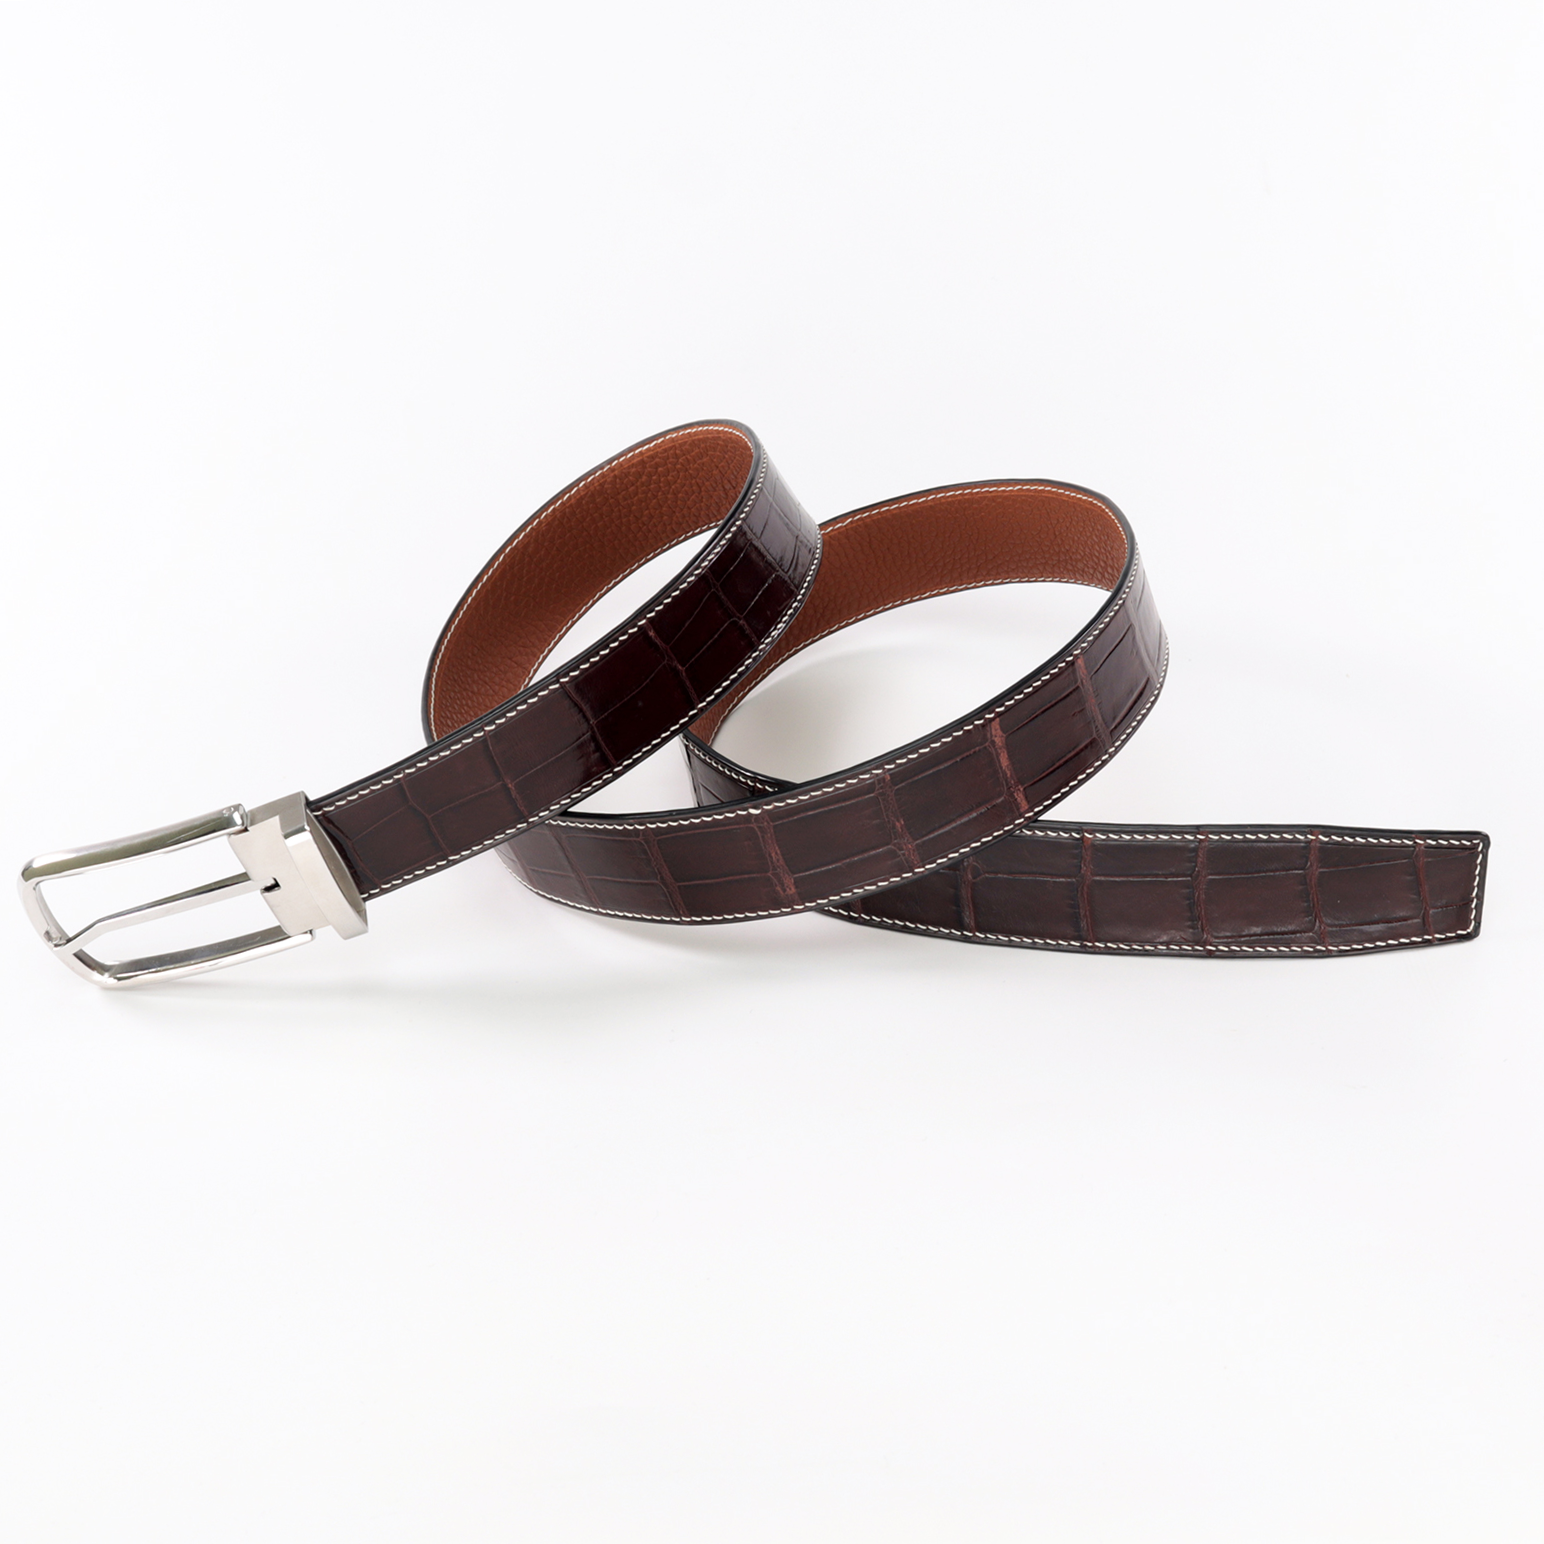 Elegant Adjustable Handmade Crocodile Leather Belt - Genuine Luxury Style